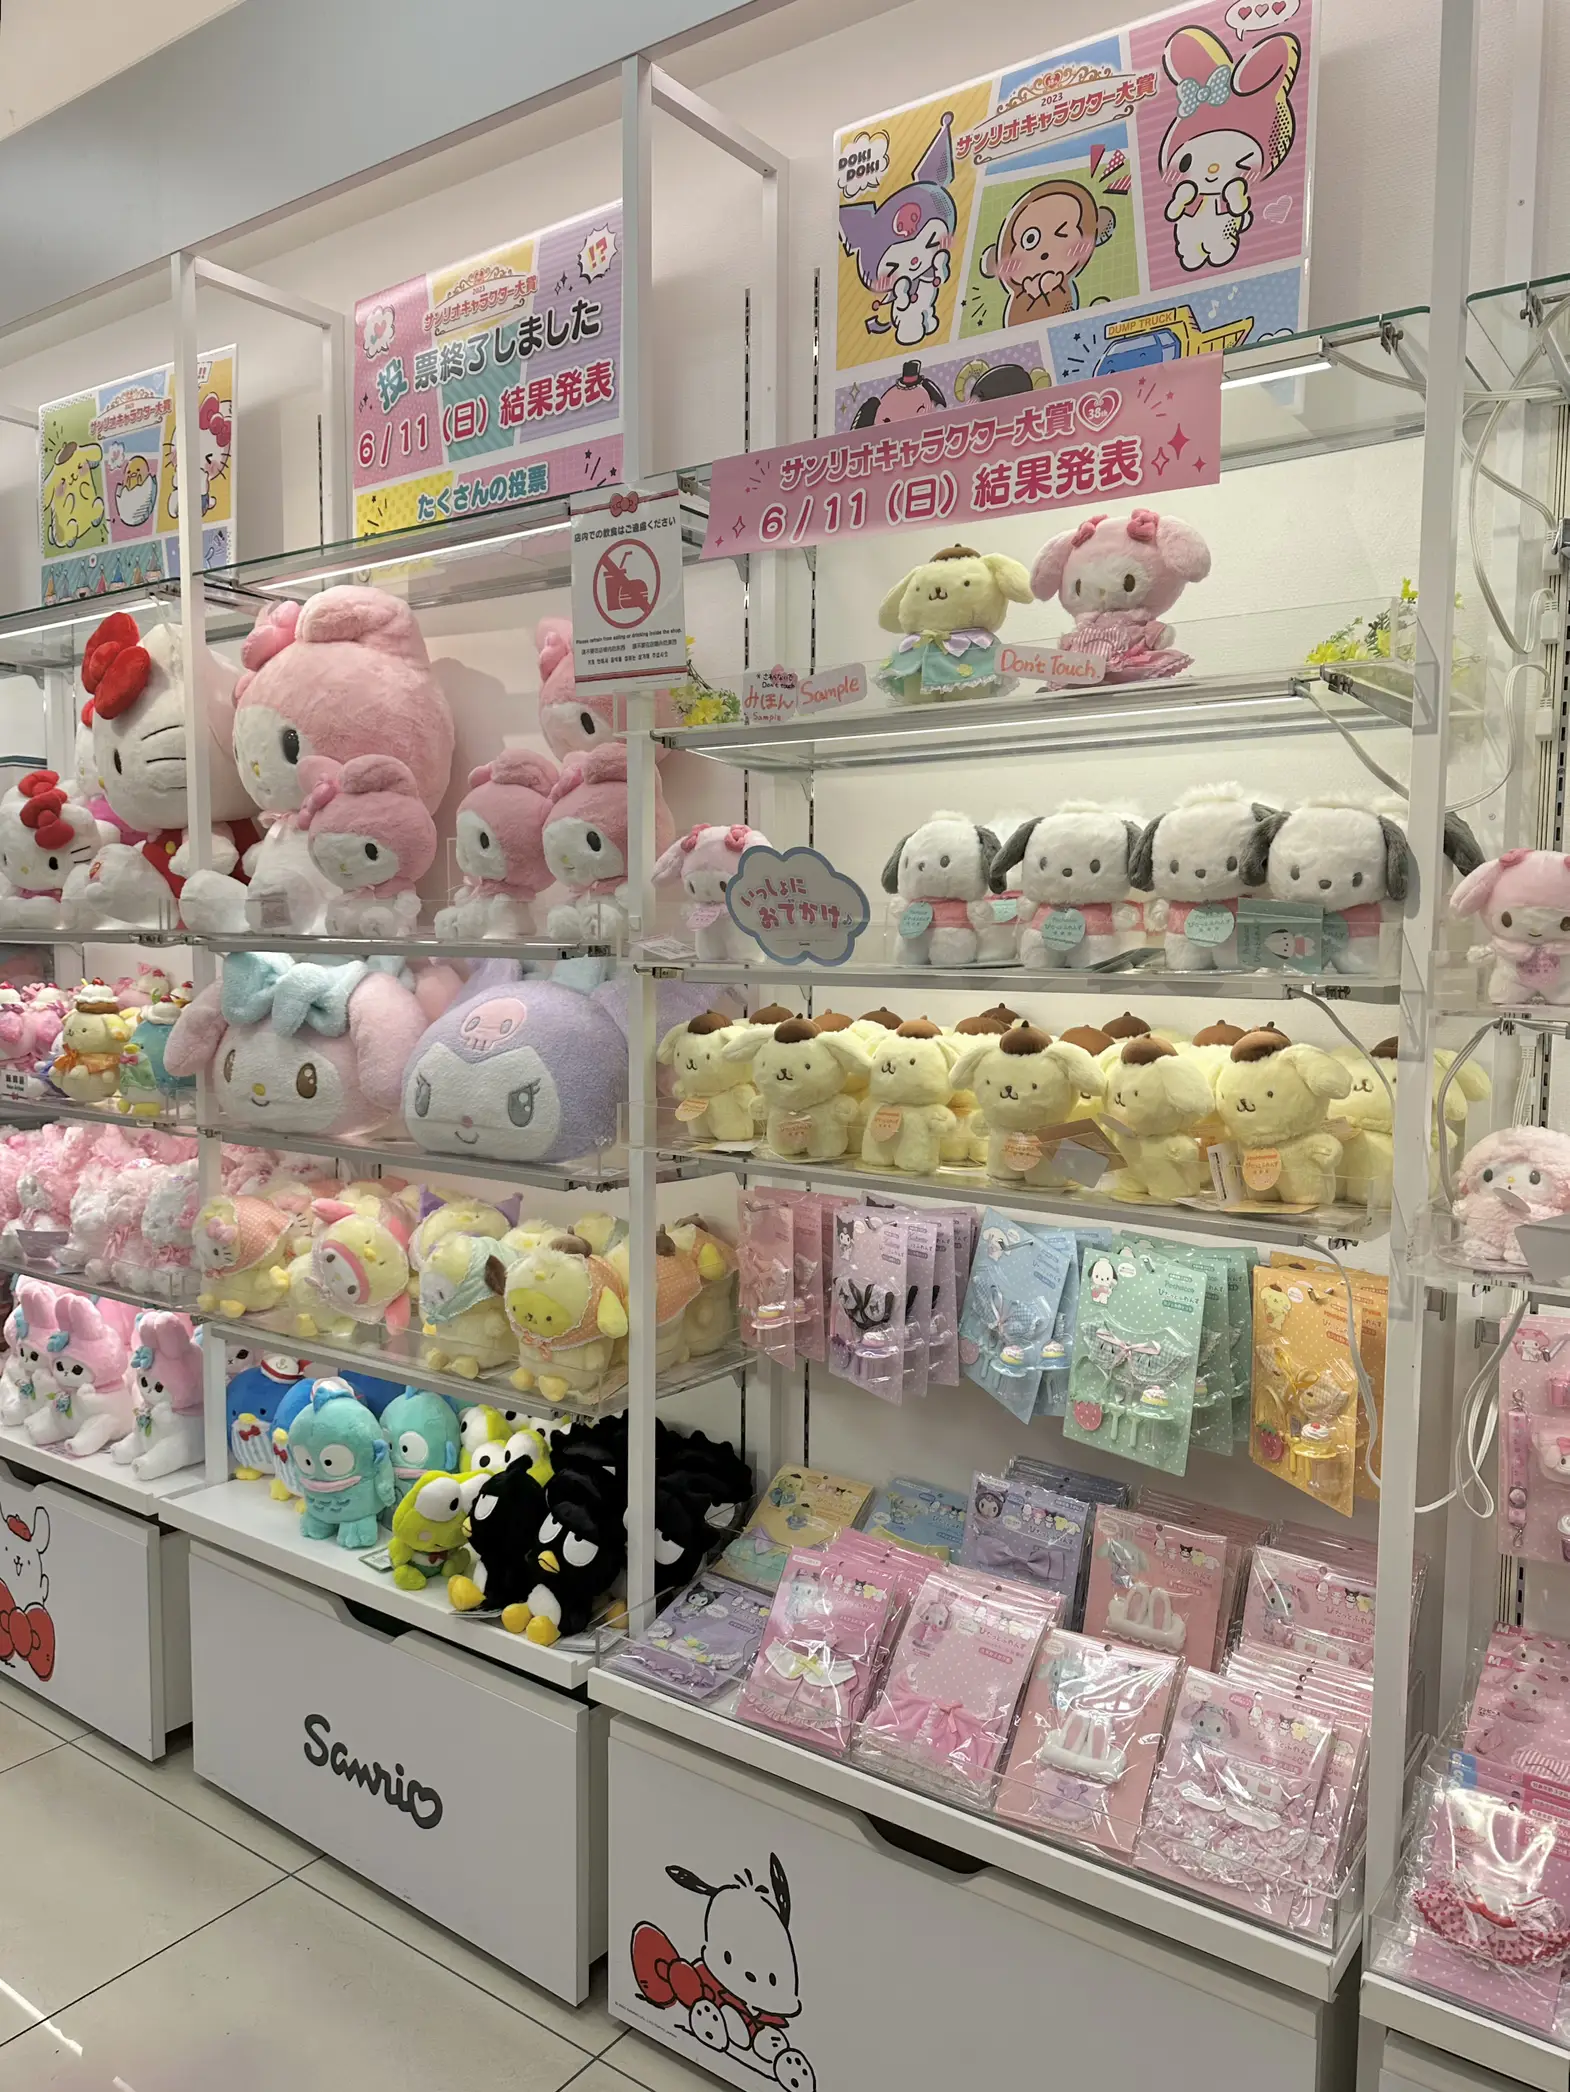 sanrio store 🎀🌸 in 2023  Sanrio store, Sanrio, Sanrio shop